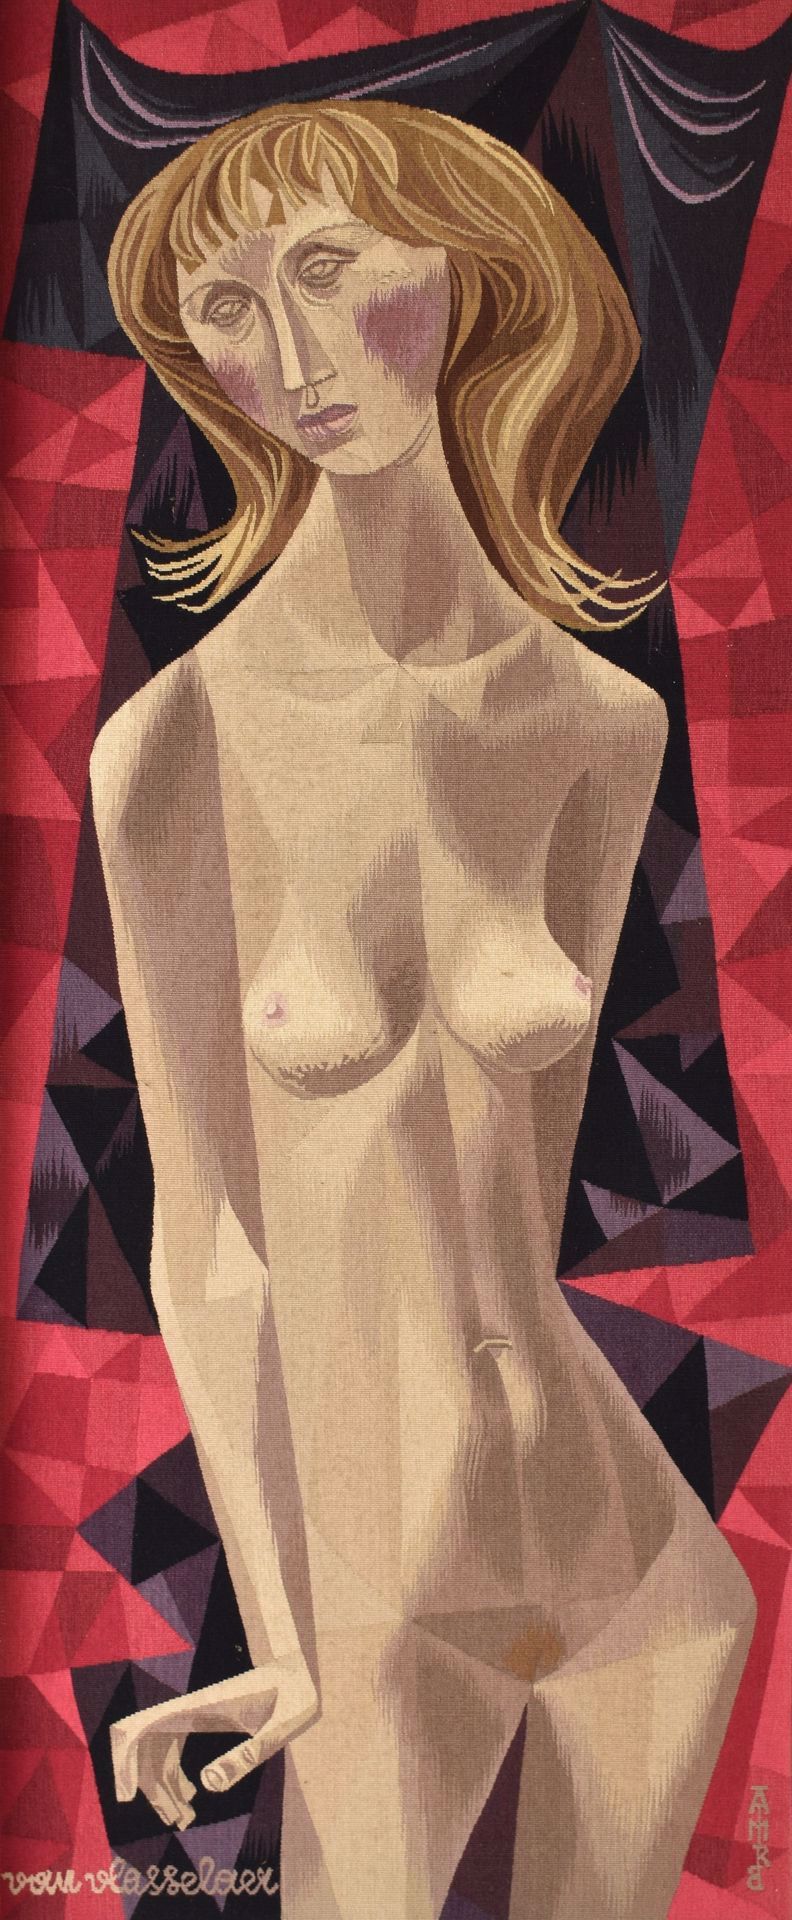 VAN VLASSELAER Nude. Tapestry, 126 x 53.